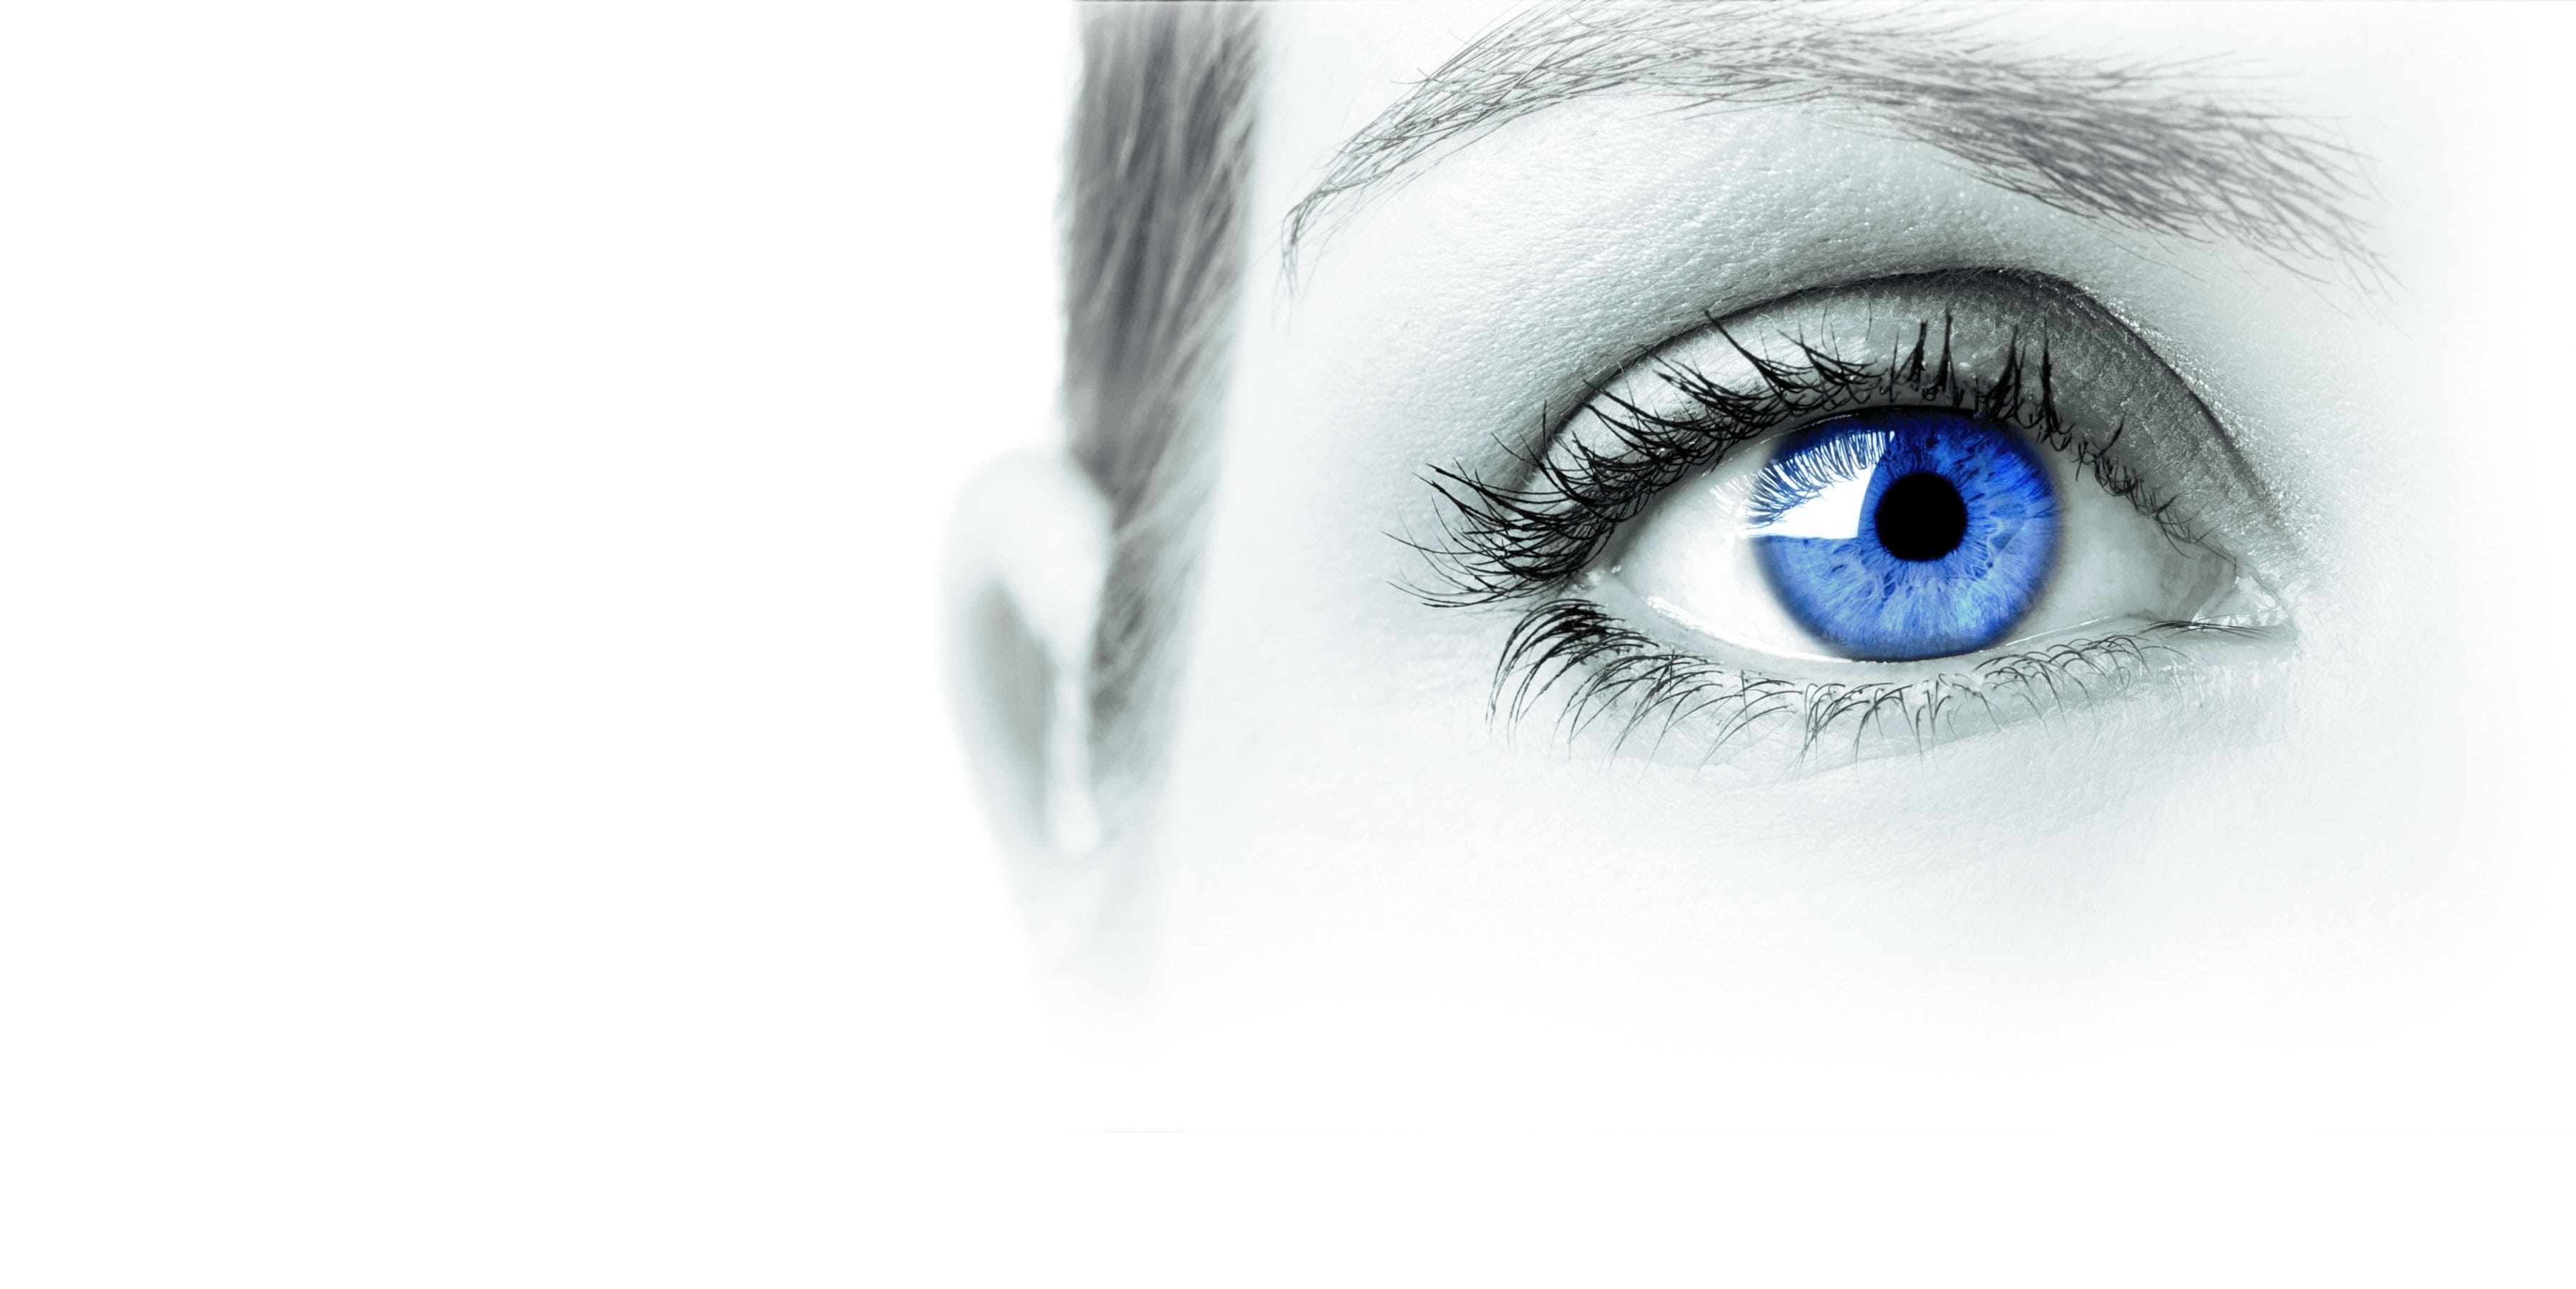 Cabecera de la categoría de productos de diagnóstico ocular. Ojo azul de mujer.